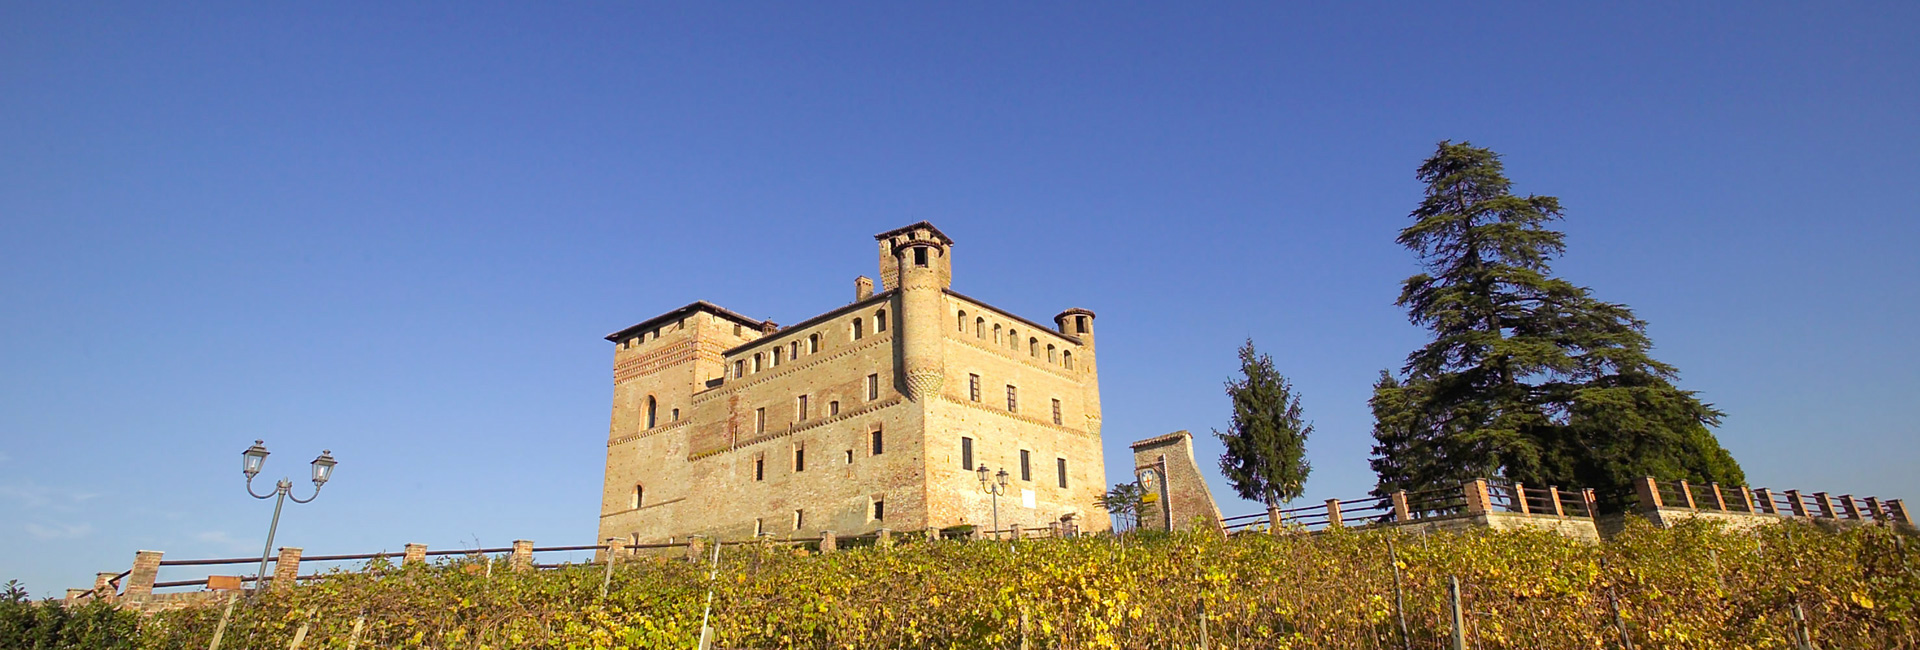 Castello Grinzane Cavour Hotel